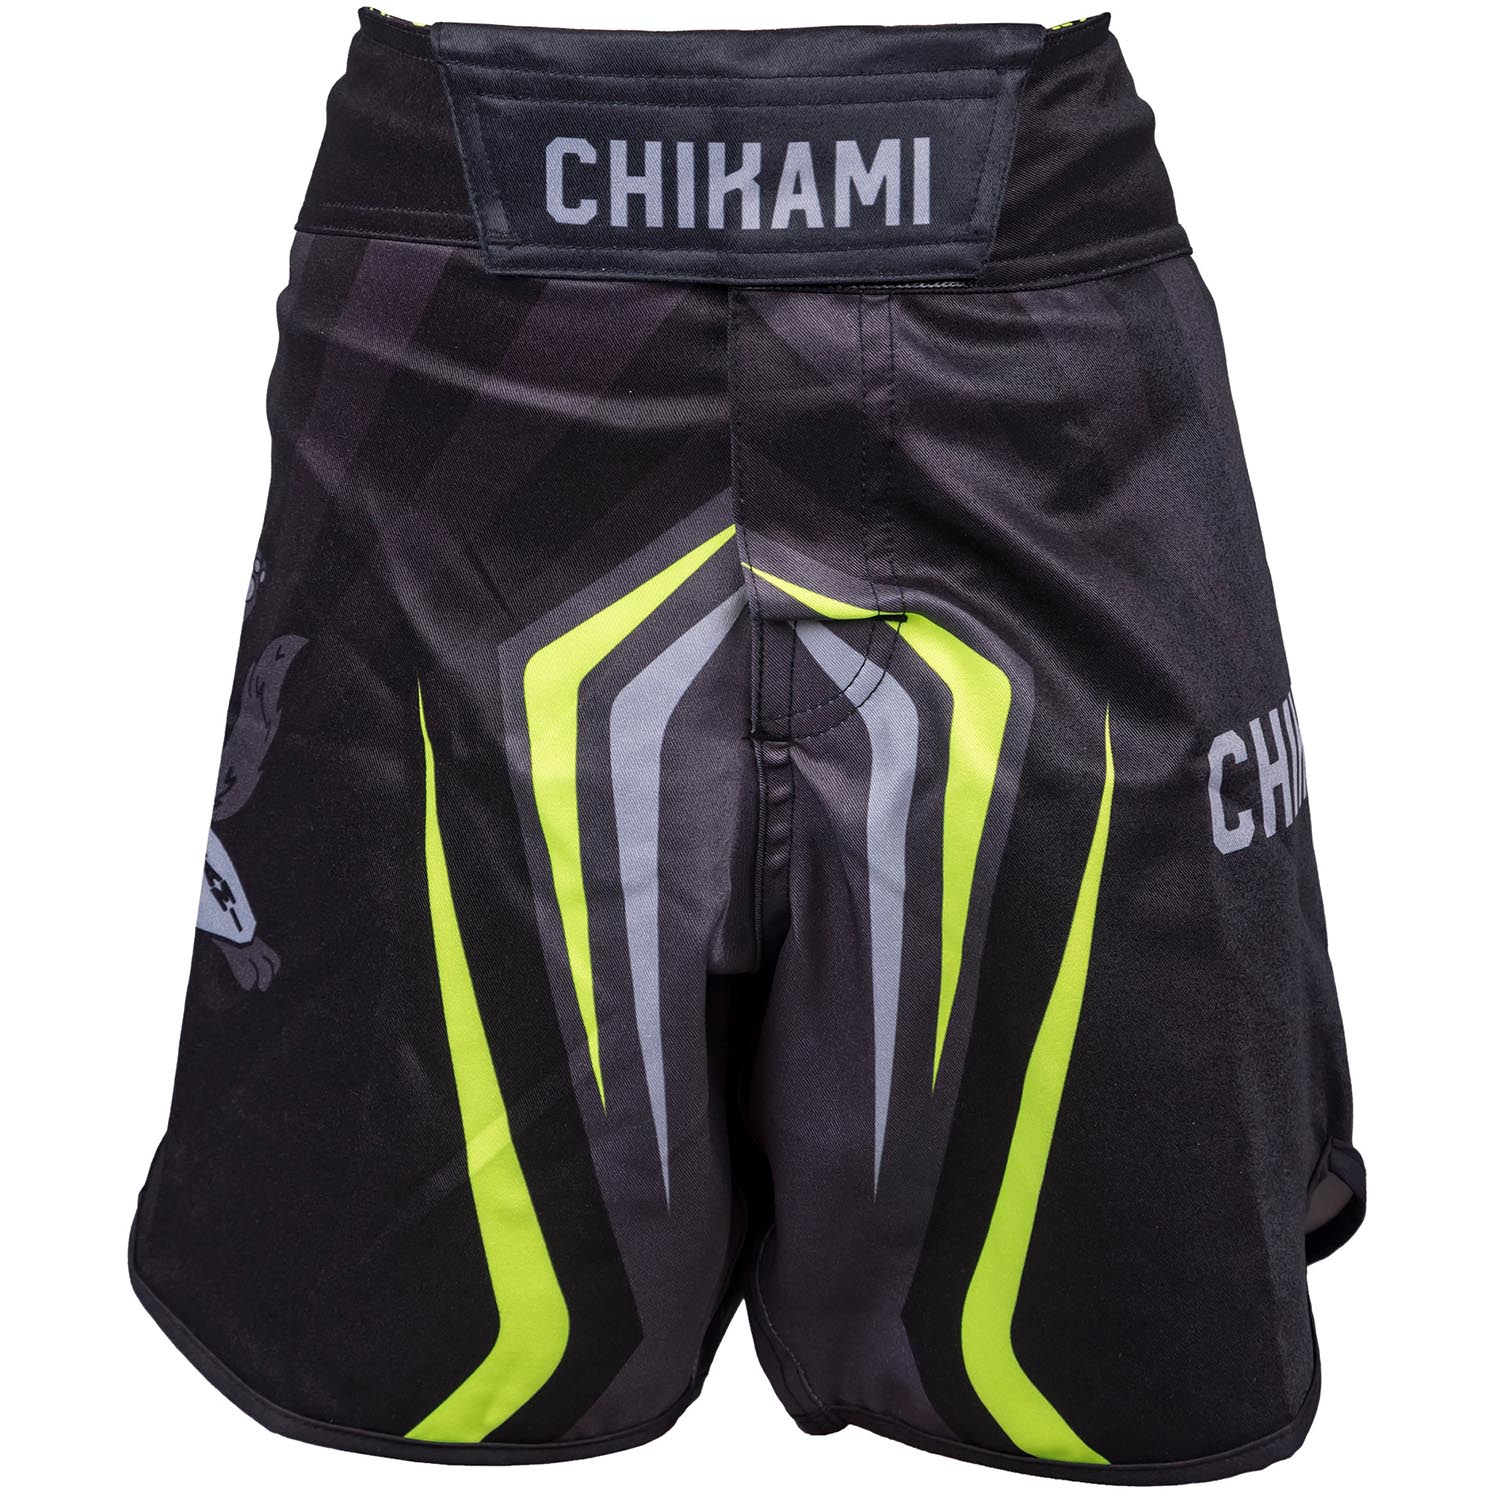 OKAMI MMA Fight Shorts, Kids, Chikami, L